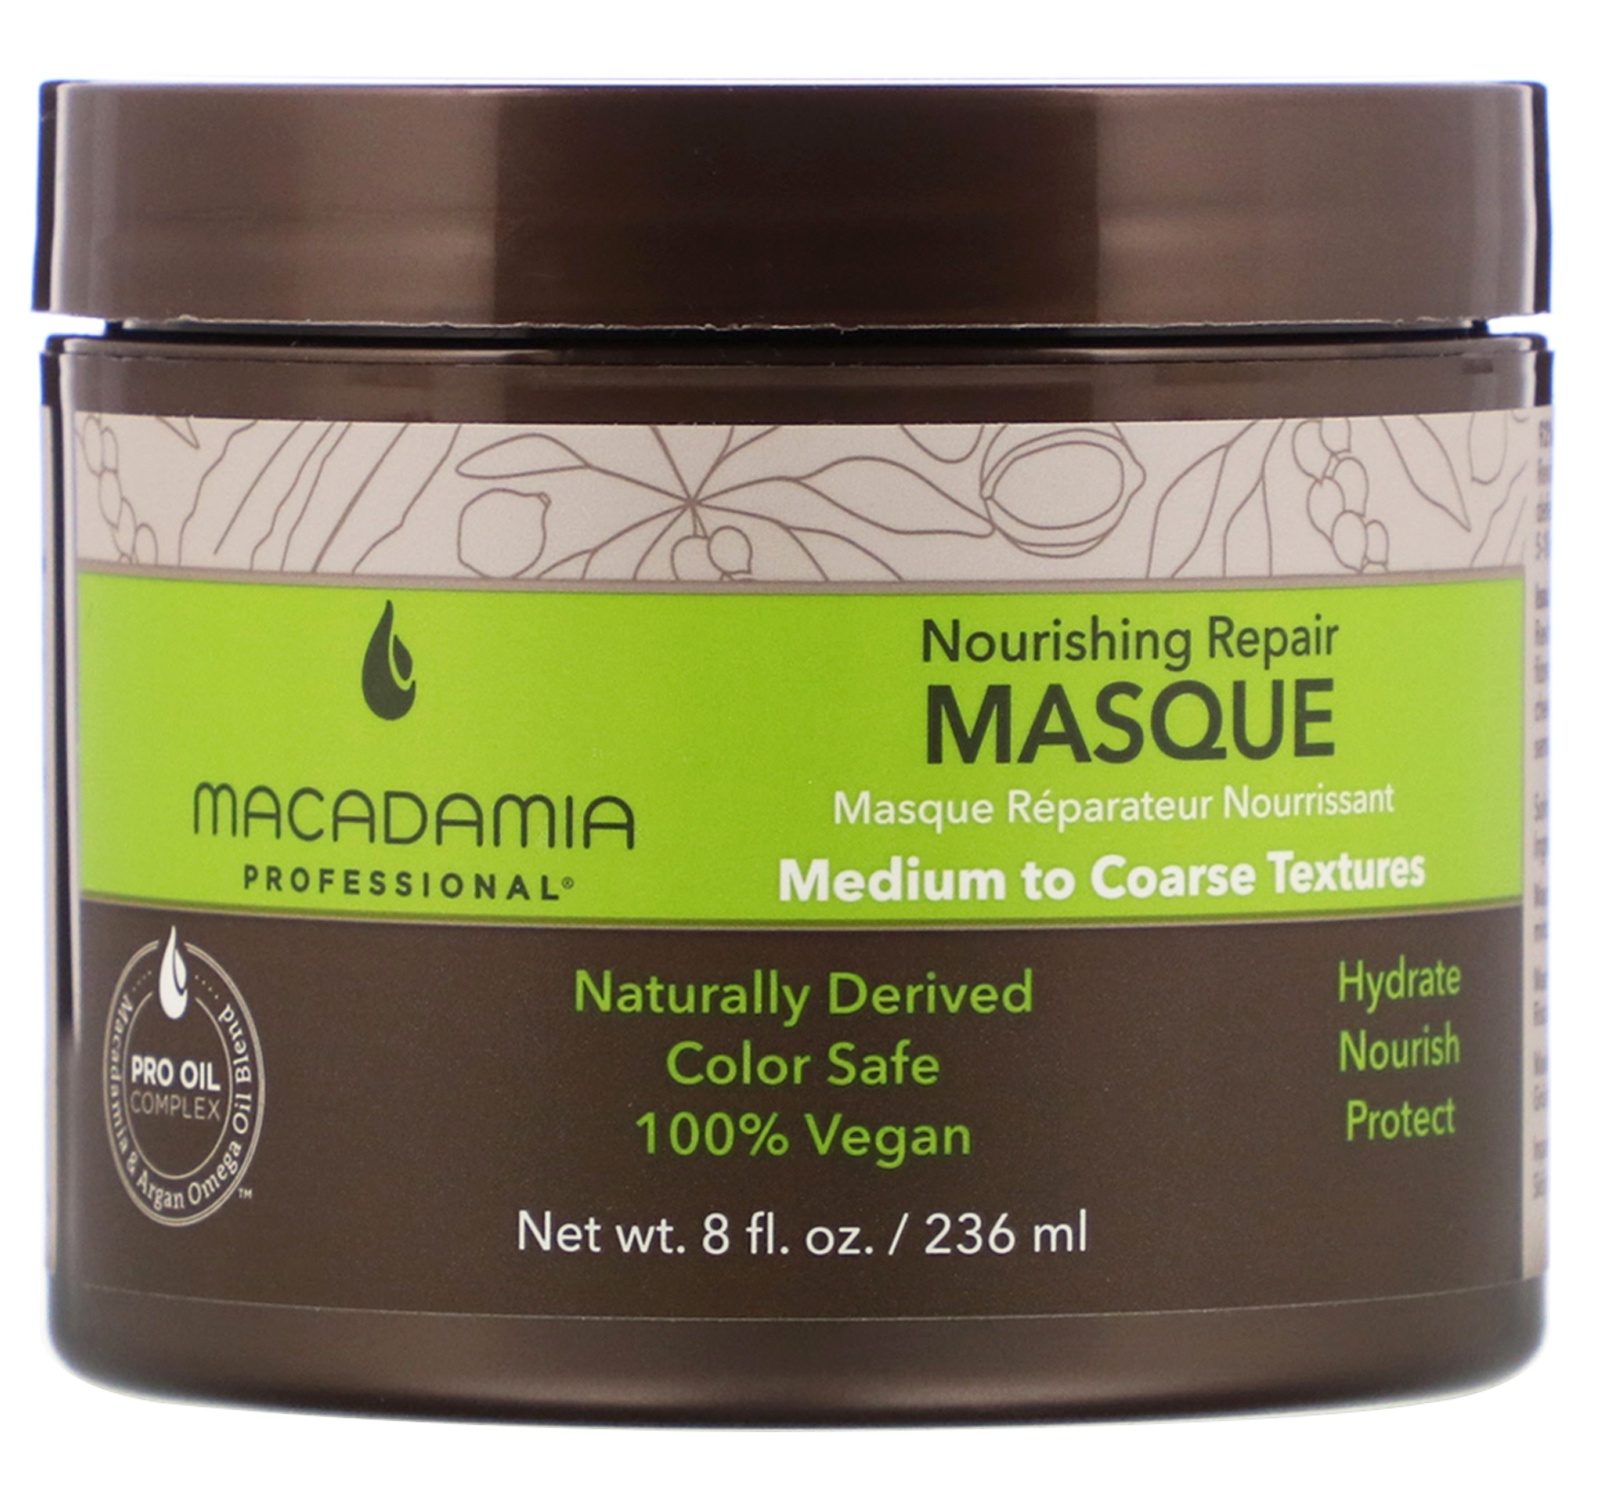 MACADAMIA PROFESSIONAL Nourishing Repair Masque